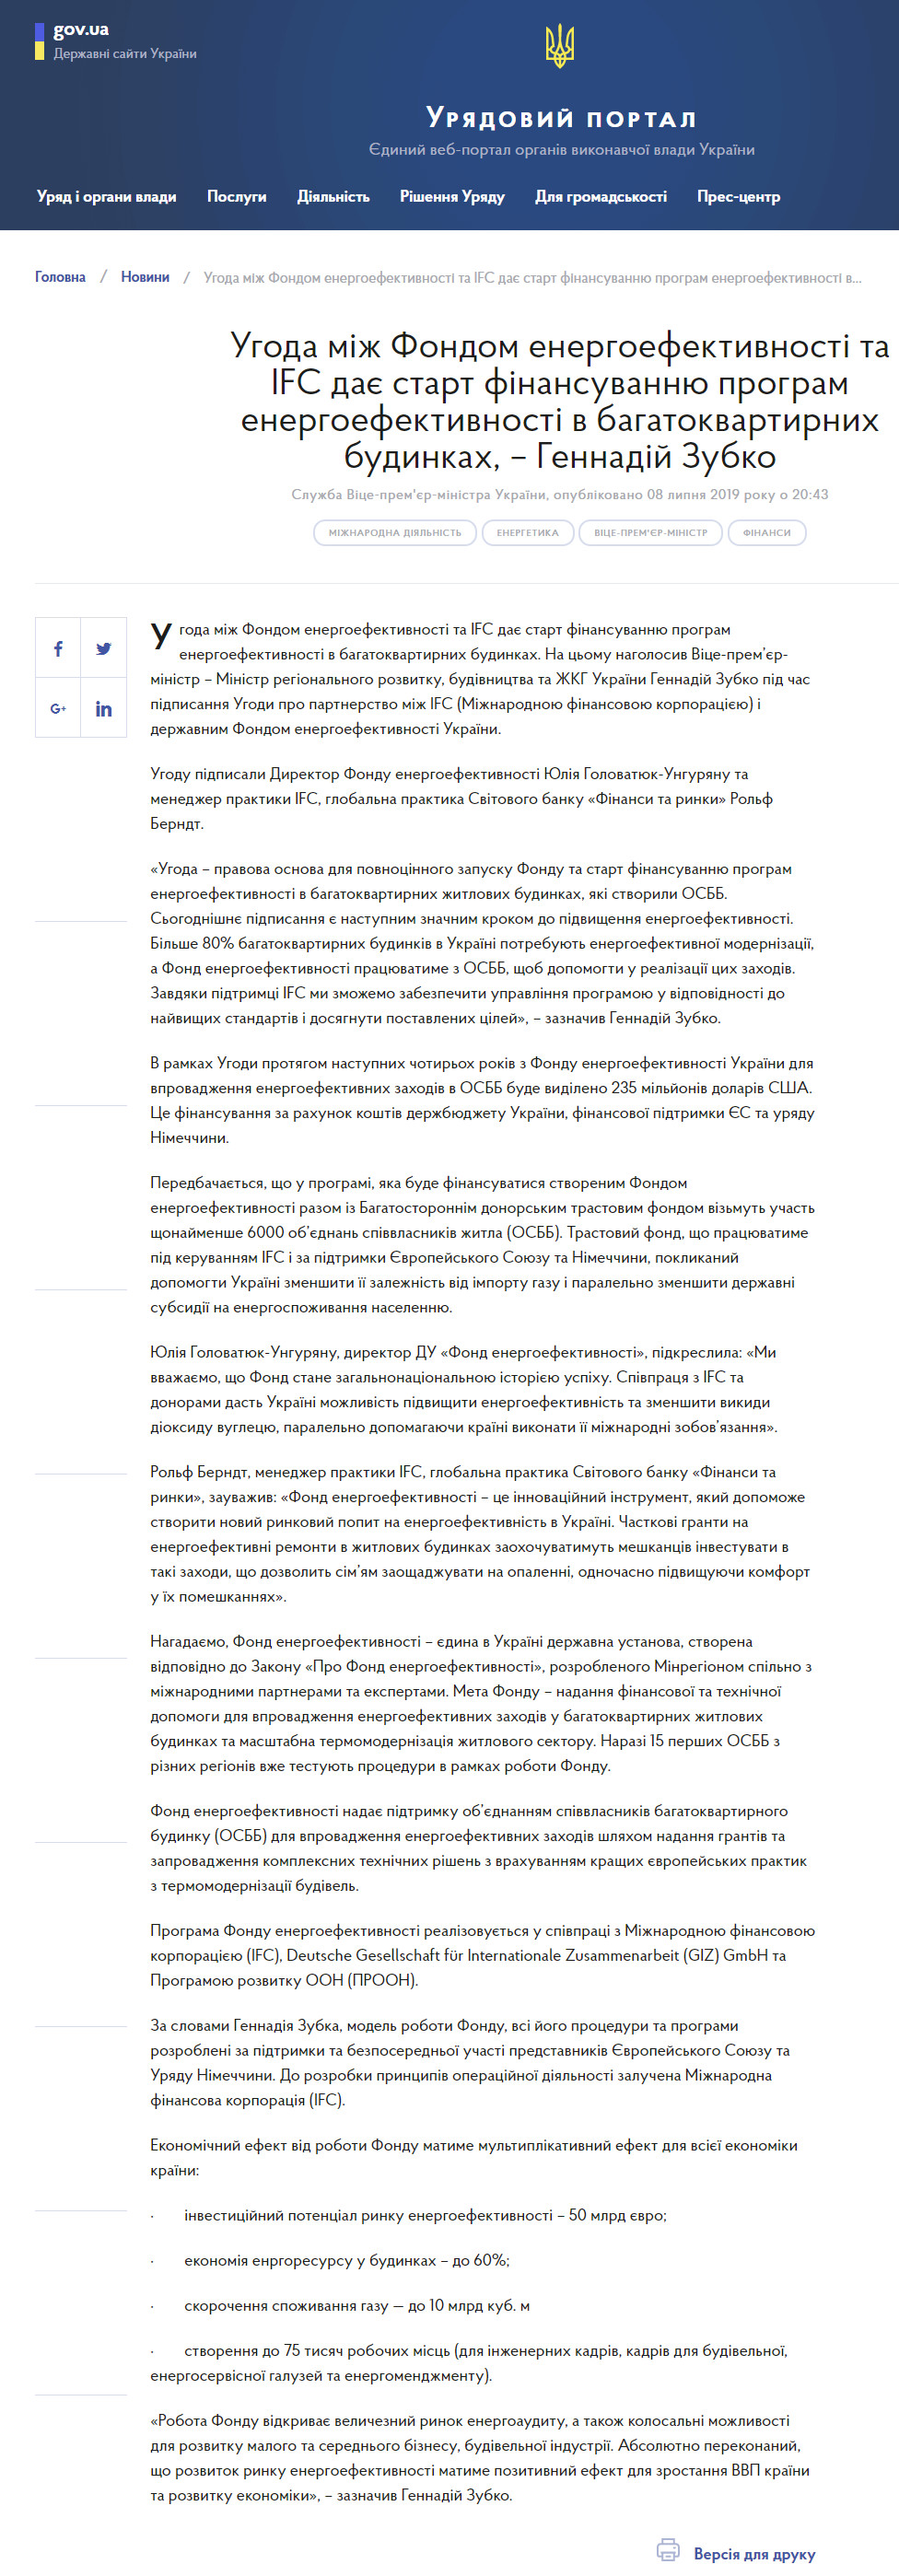 https://www.kmu.gov.ua/ua/news/ugoda-mizh-fondom-energoefektivnosti-ta-ifc-daye-start-finansuvannyu-program-energoefektivnosti-v-bagatokvartirnih-budinkah-gennadij-zubko